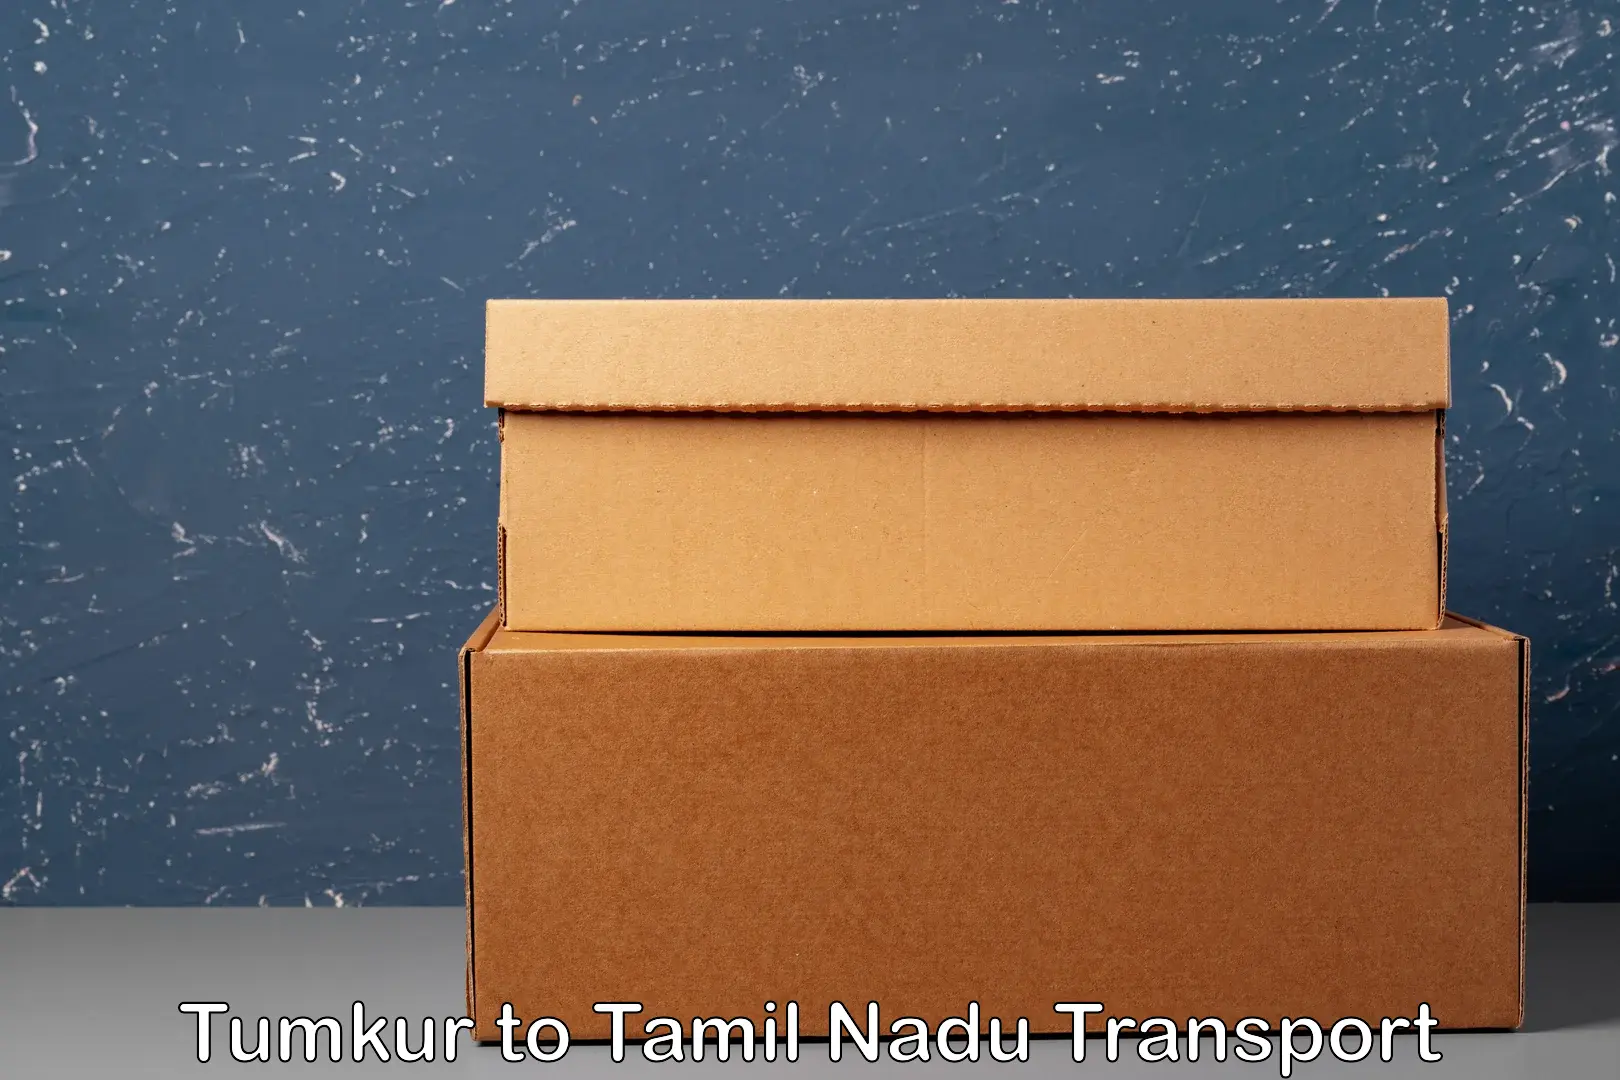 Parcel transport services Tumkur to Panruti